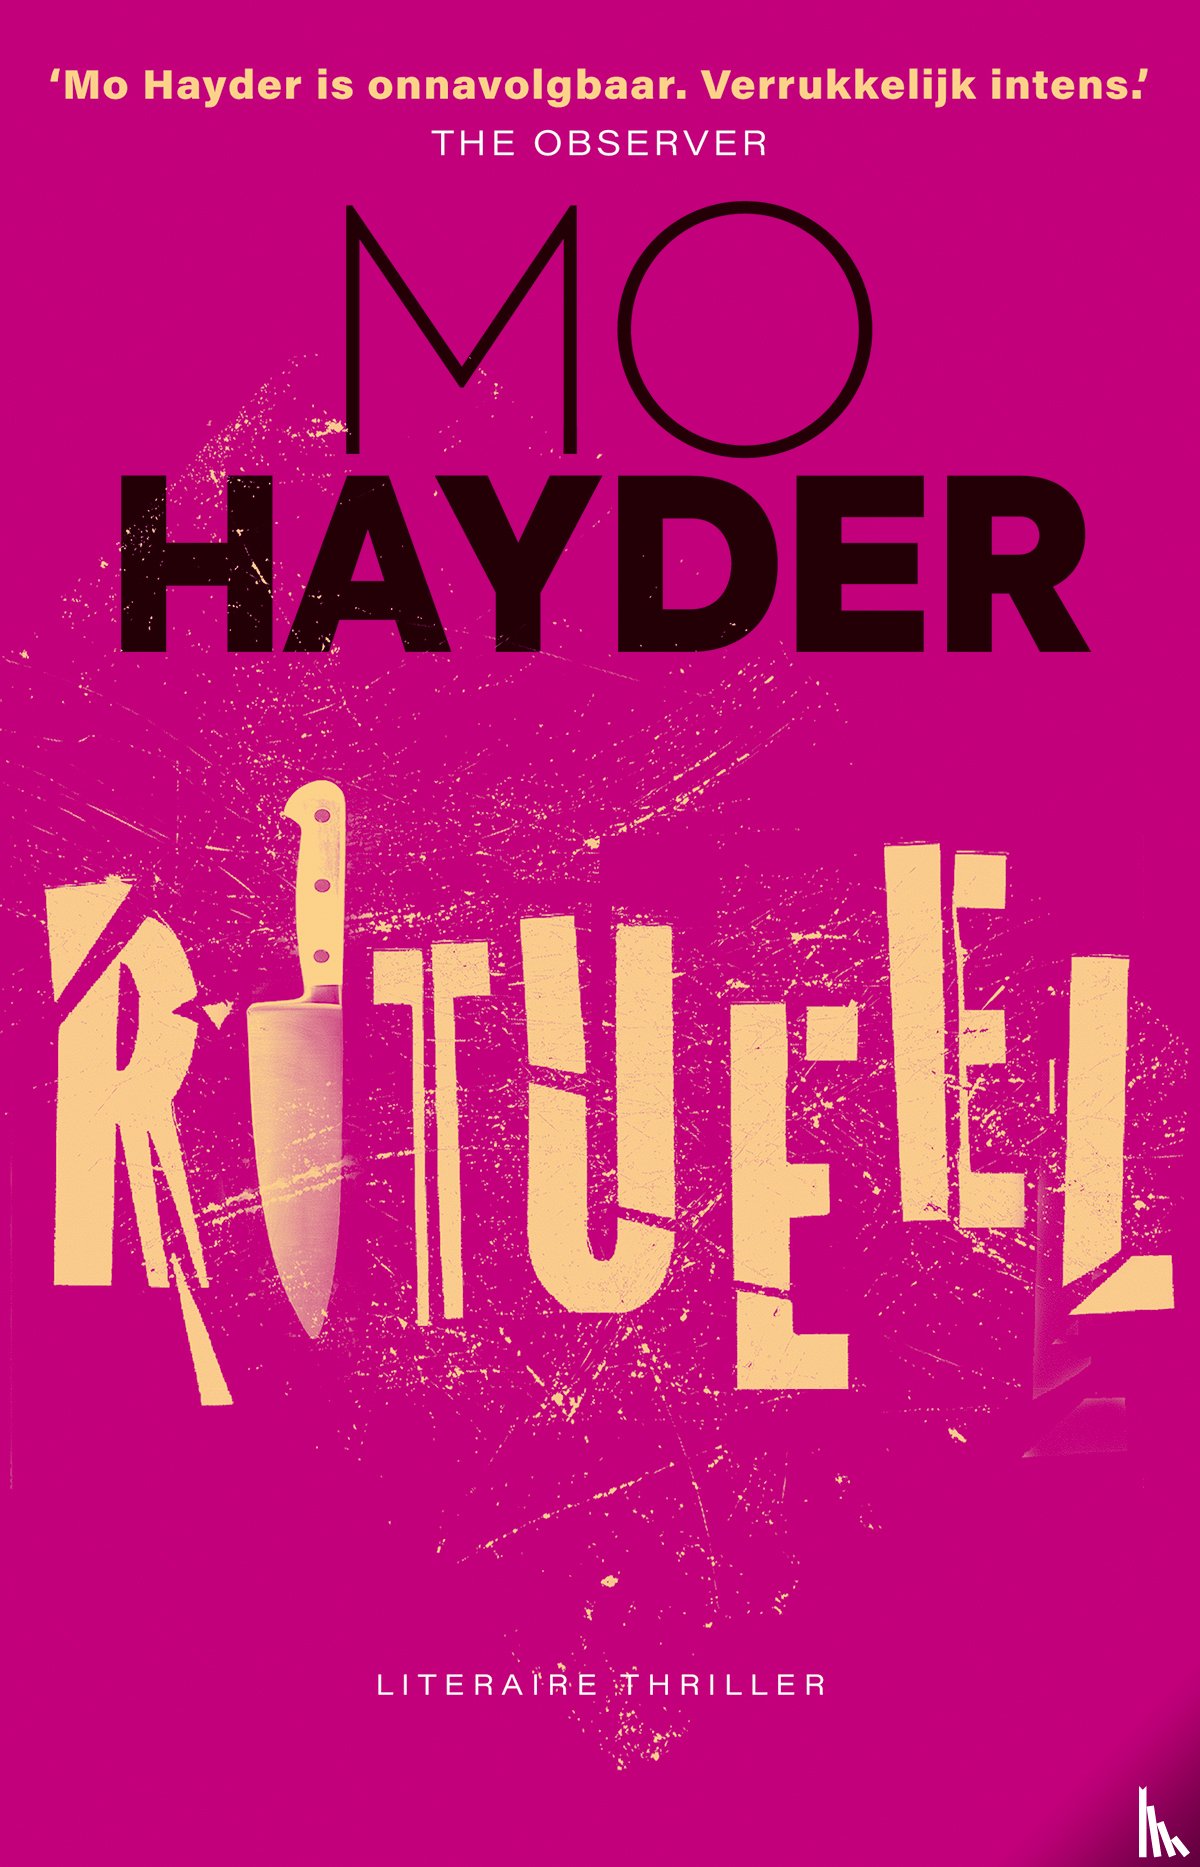 Hayder, Mo - Ritueel